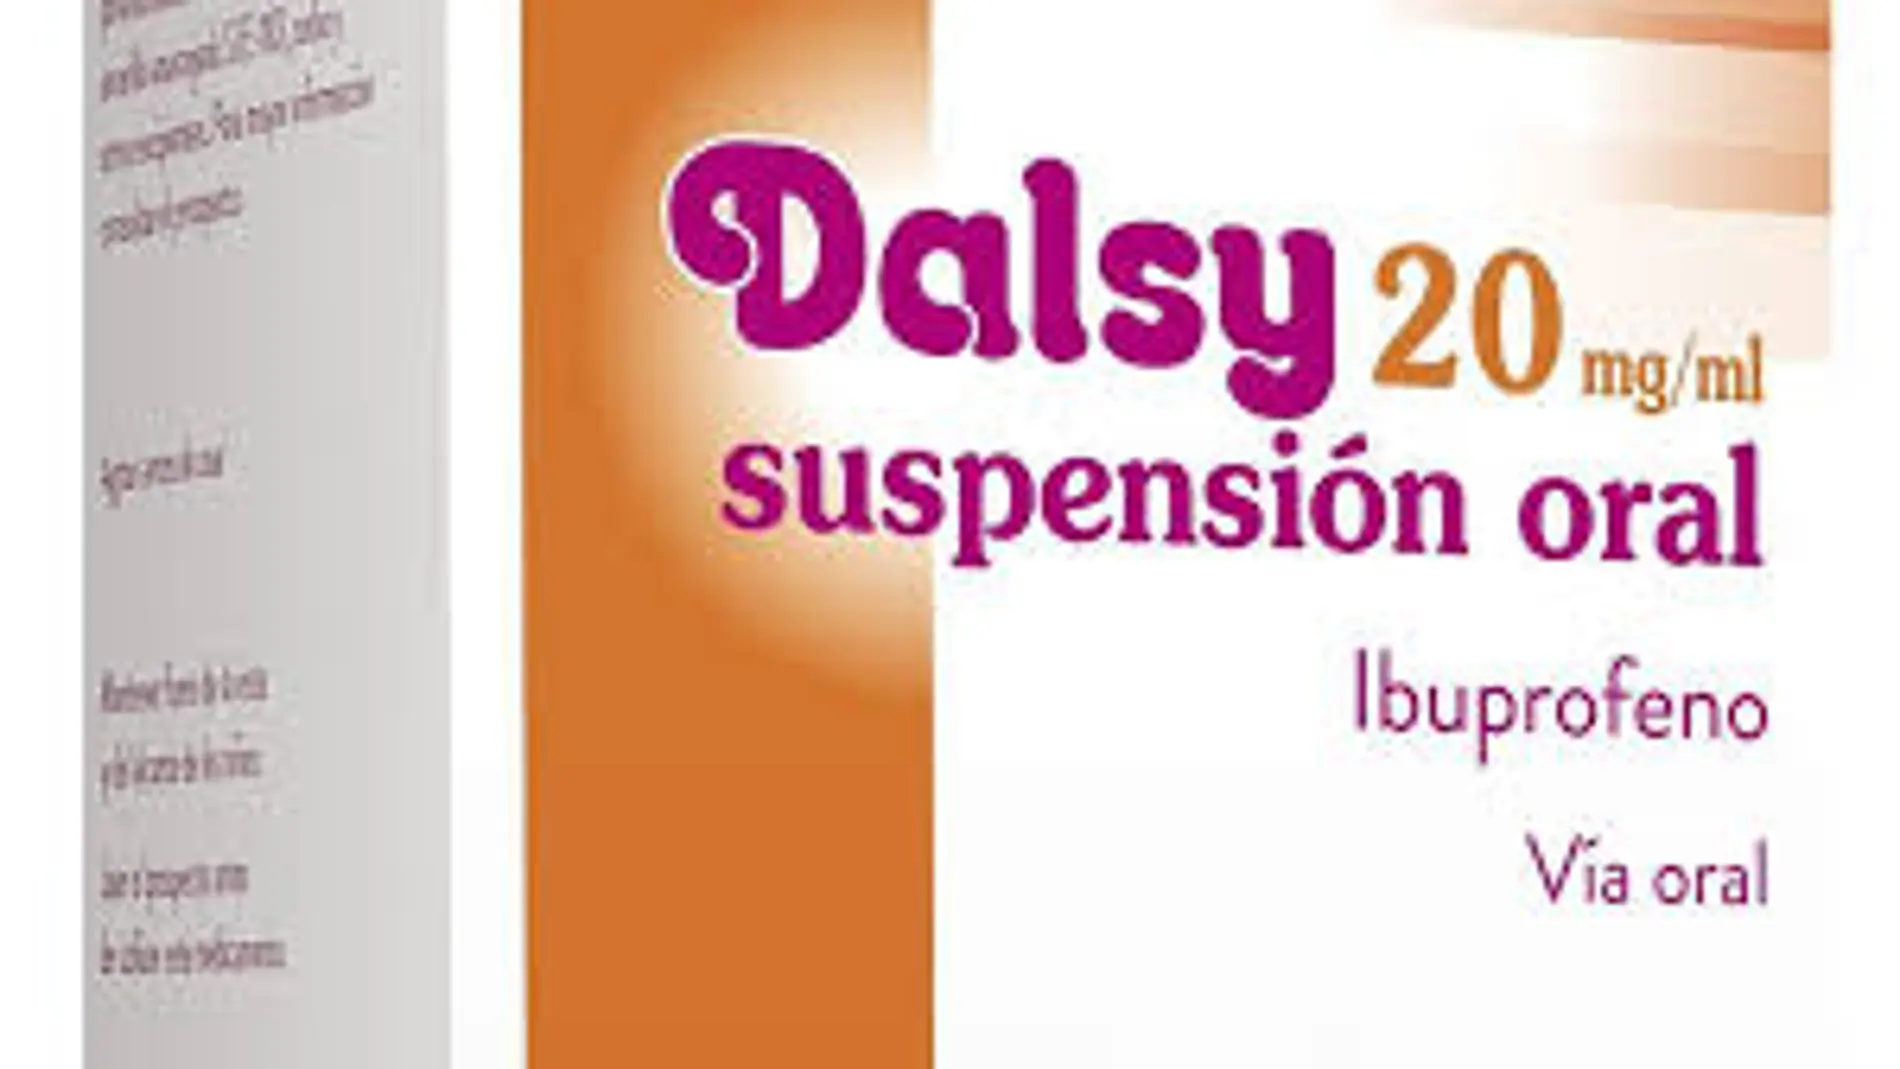 Sanidad informa de problemas en el suministro de Dalsy 20 mg/ml suspensión oral hasta junio de 2019